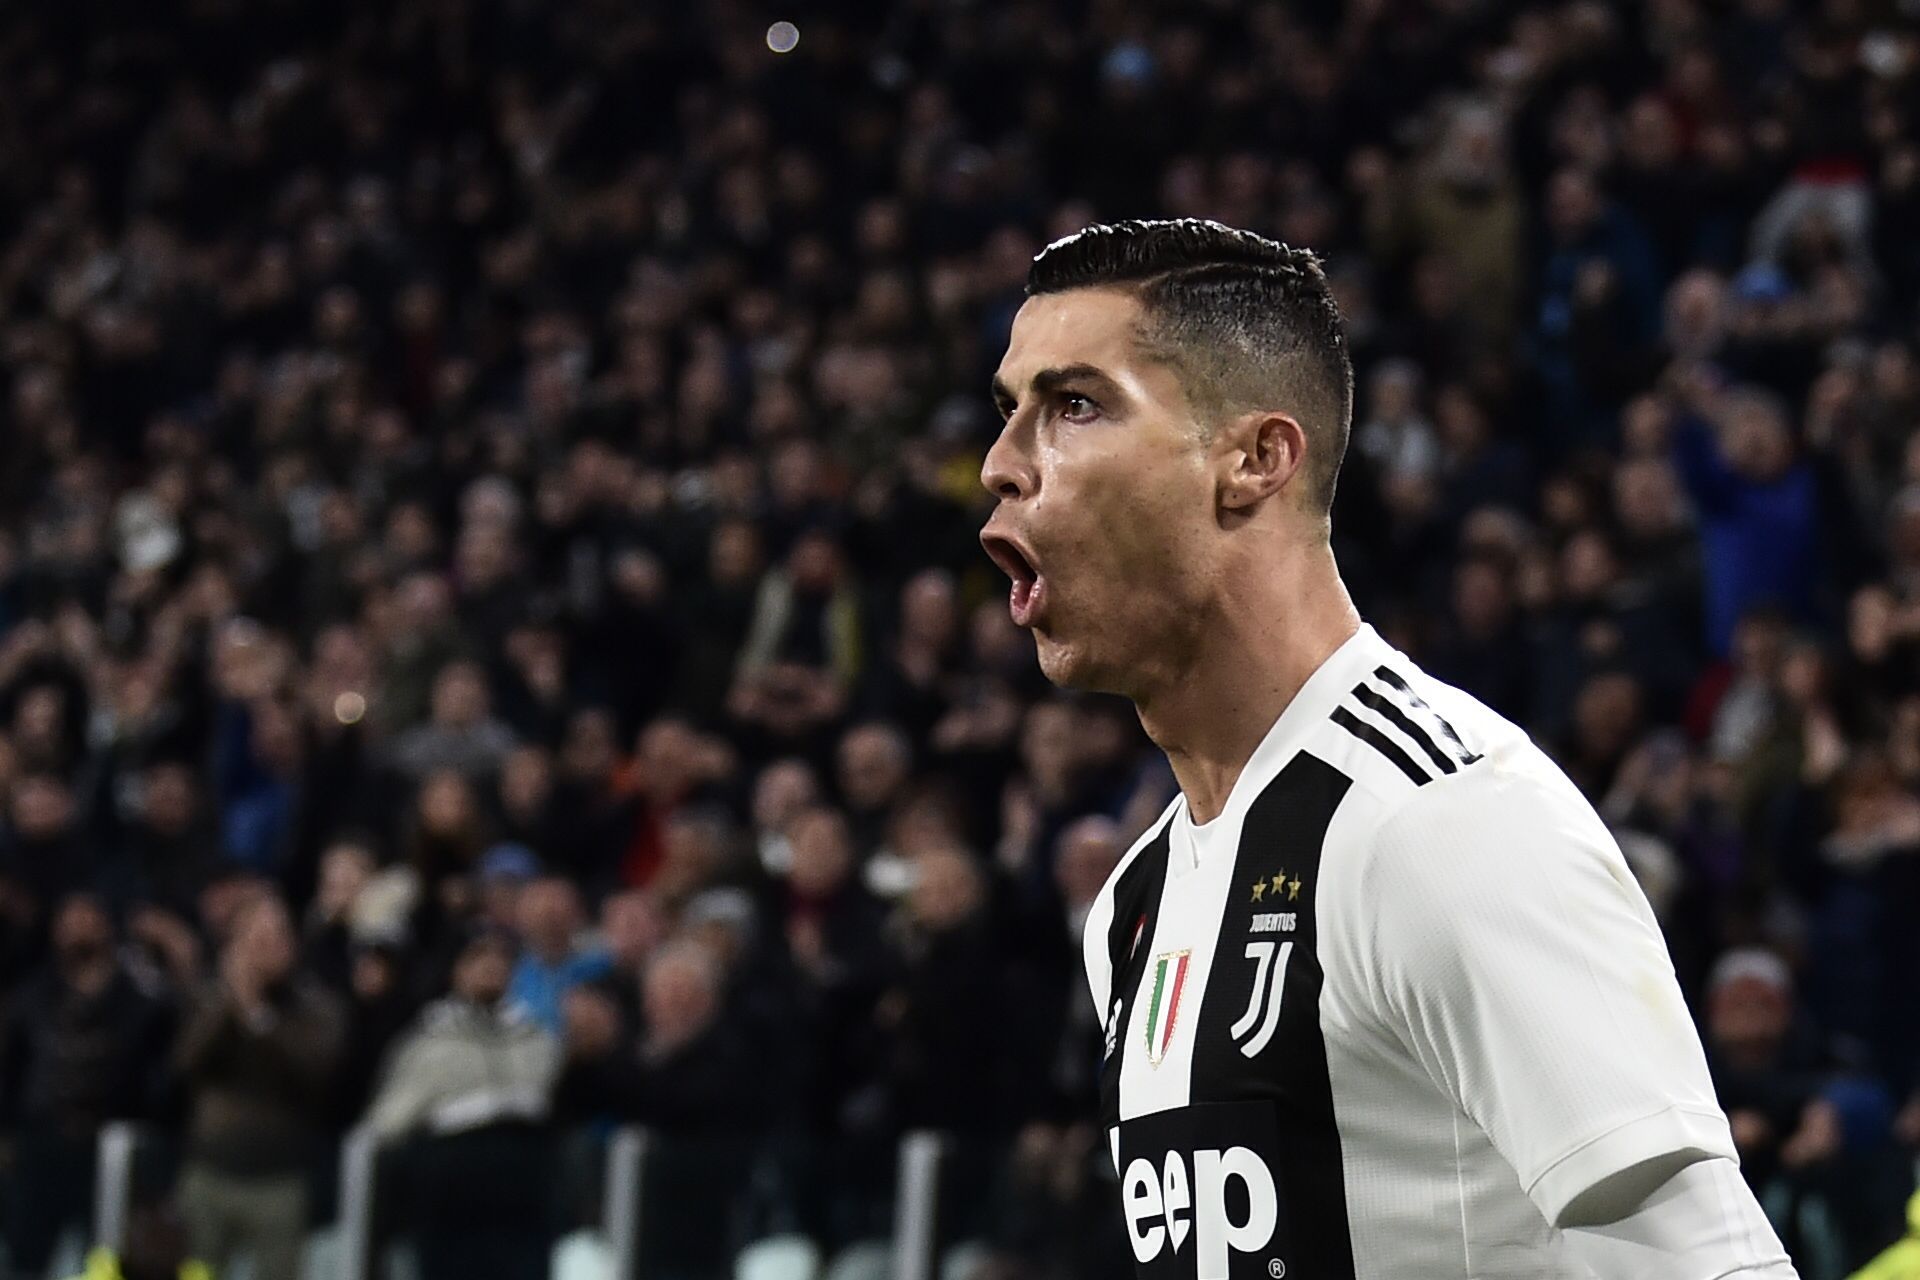 Bancadas da Juventus gritam ‘siiiii’ com Cristiano Ronaldo